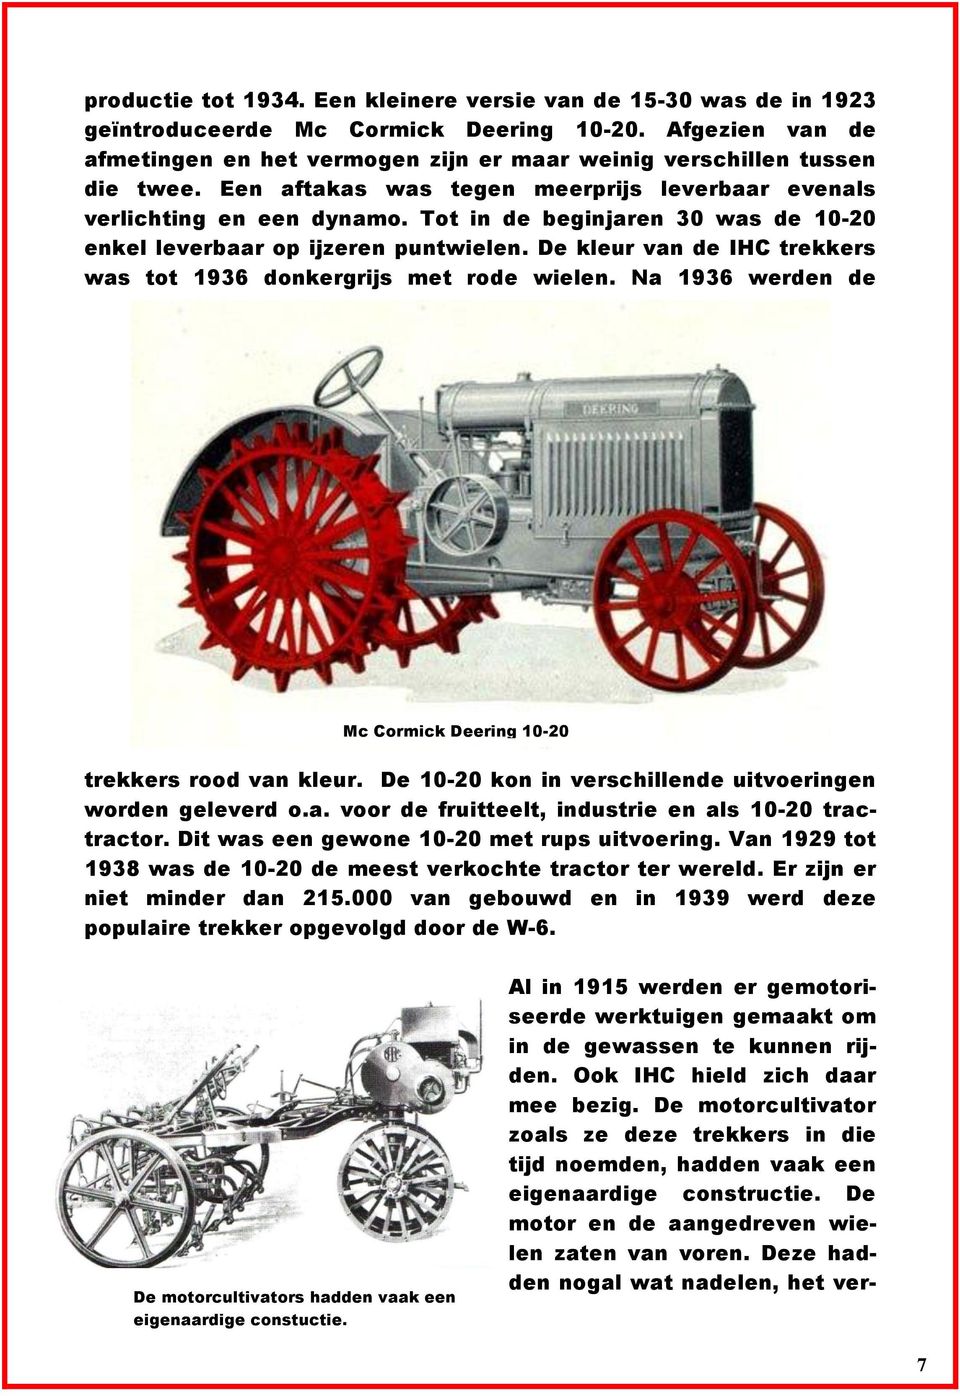 Tot in de beginjaren 30 was de 10-20 enkel leverbaar op ijzeren puntwielen. De kleur van de IHC trekkers was tot 1936 donkergrijs met rode wielen.